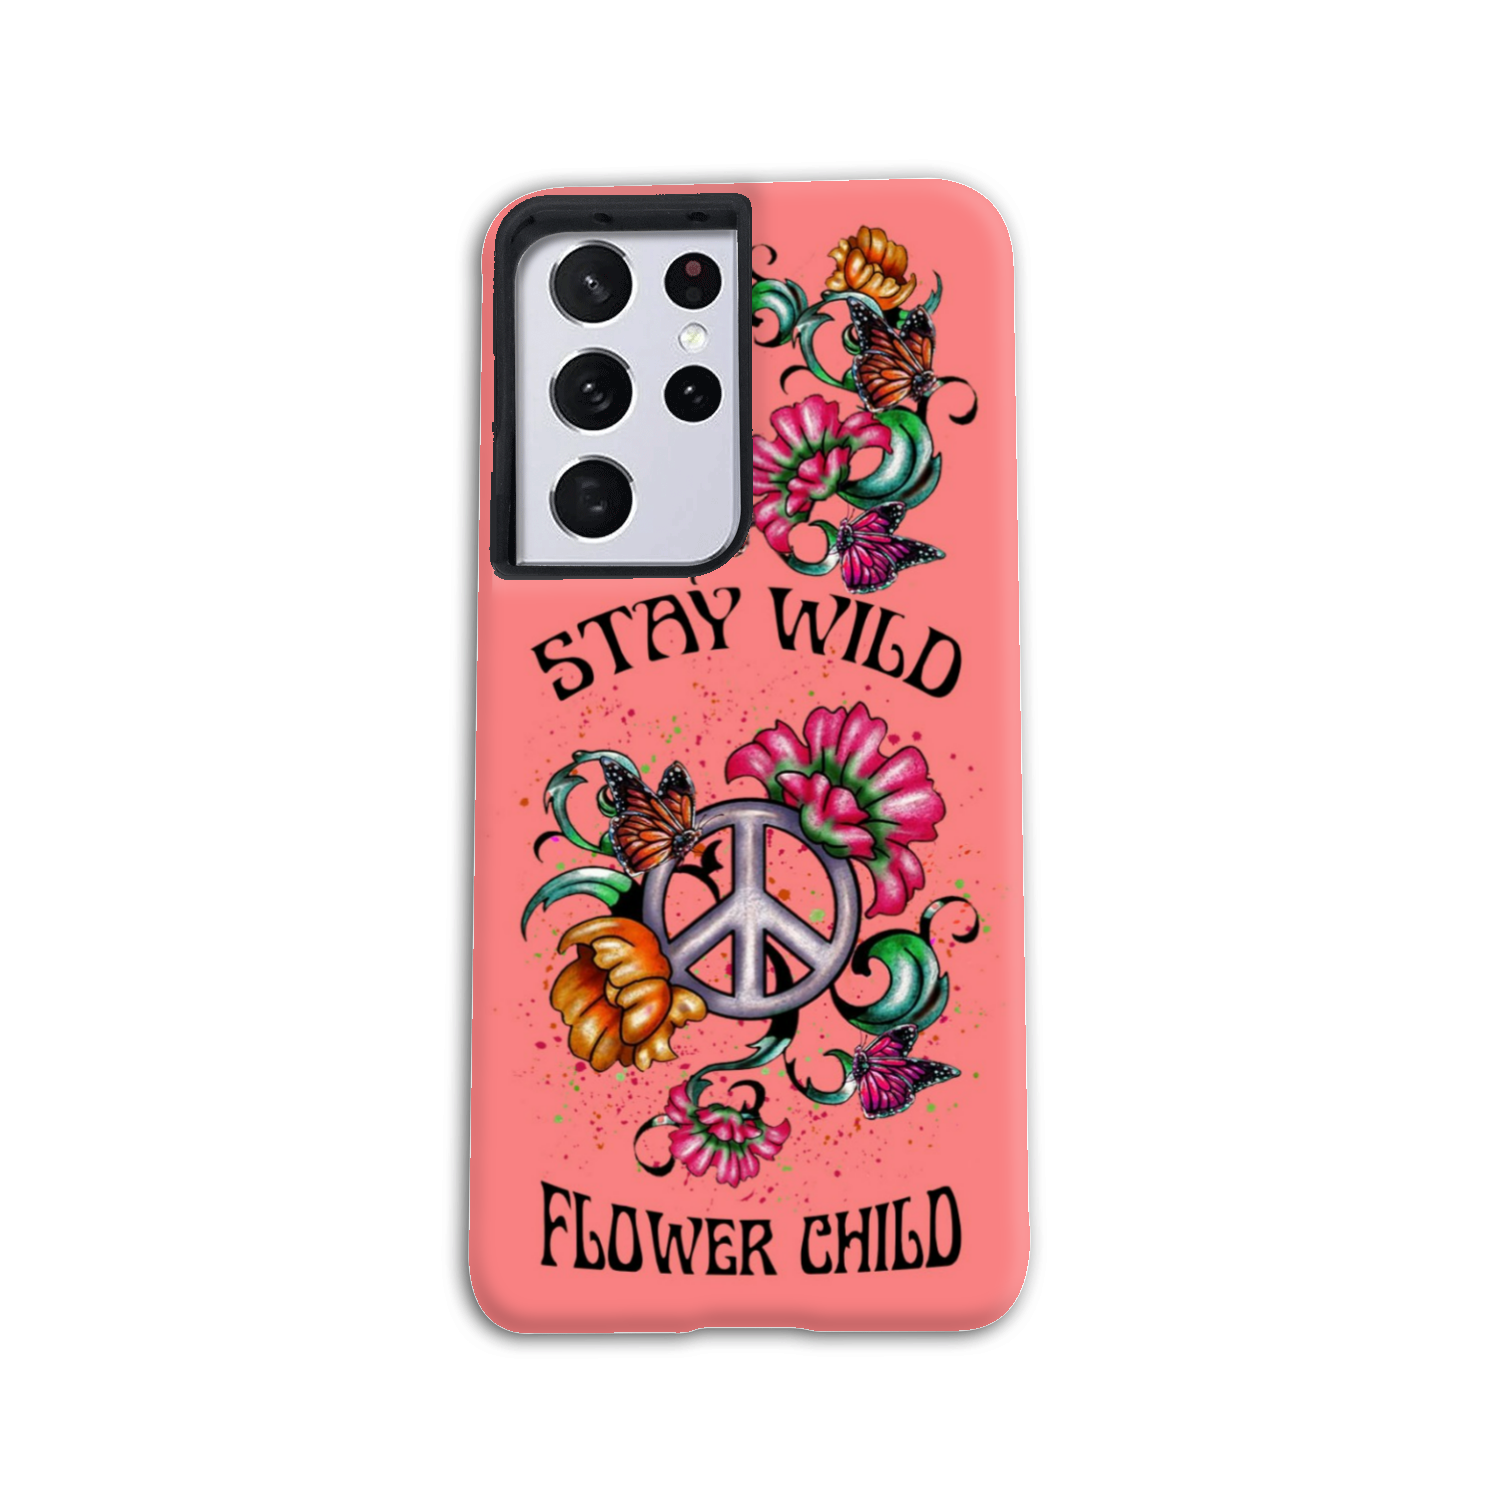 STAY WILD FLOWER CHILD PHONE CASE - YHLN2003233